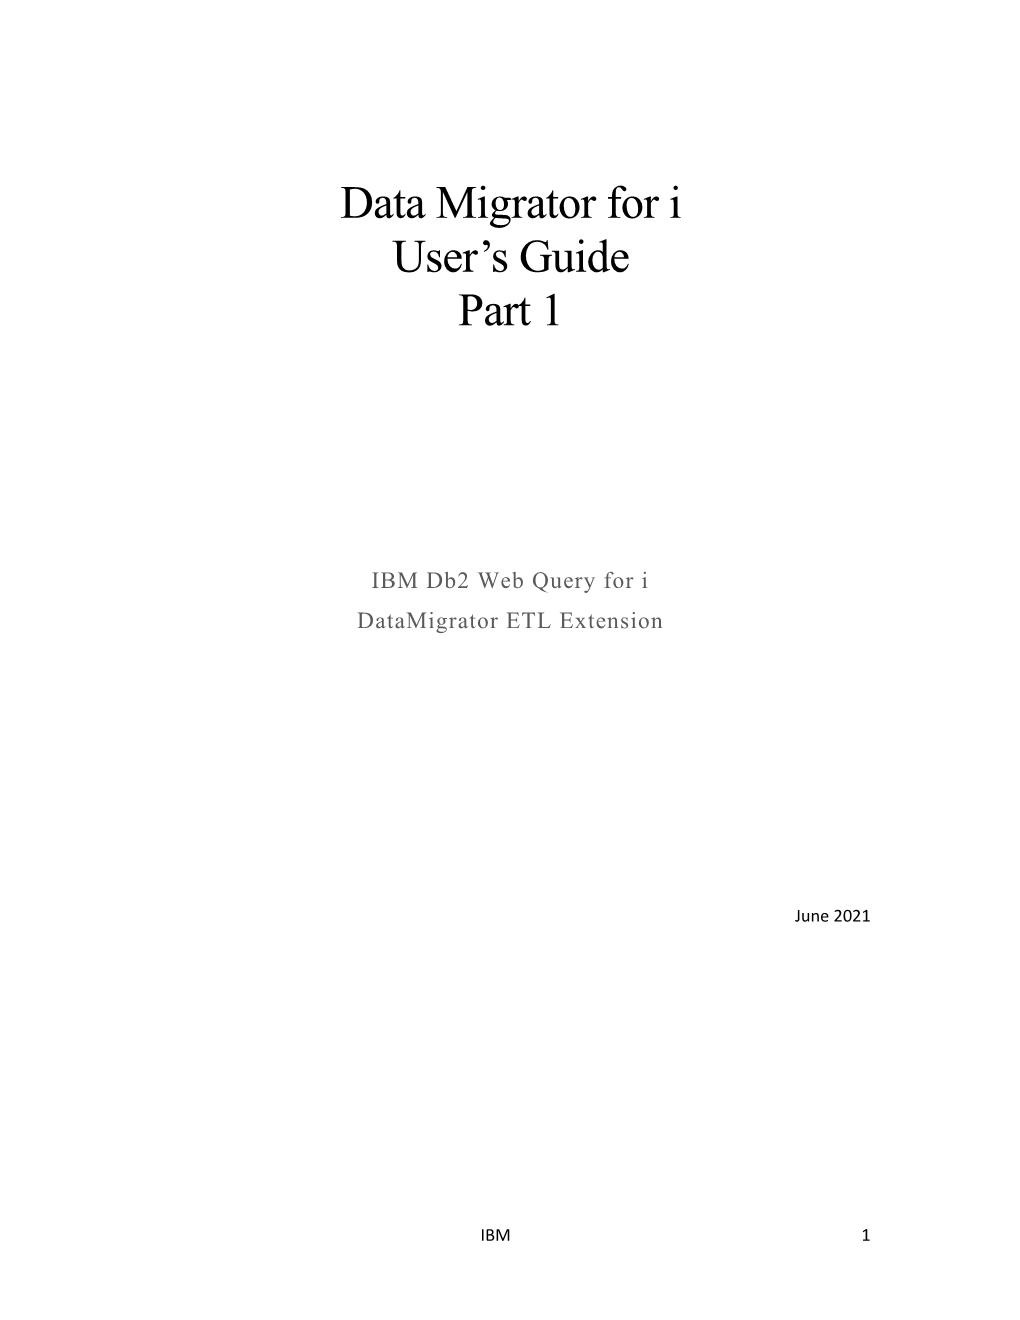 Data Migrator for I User's Guide Part 1